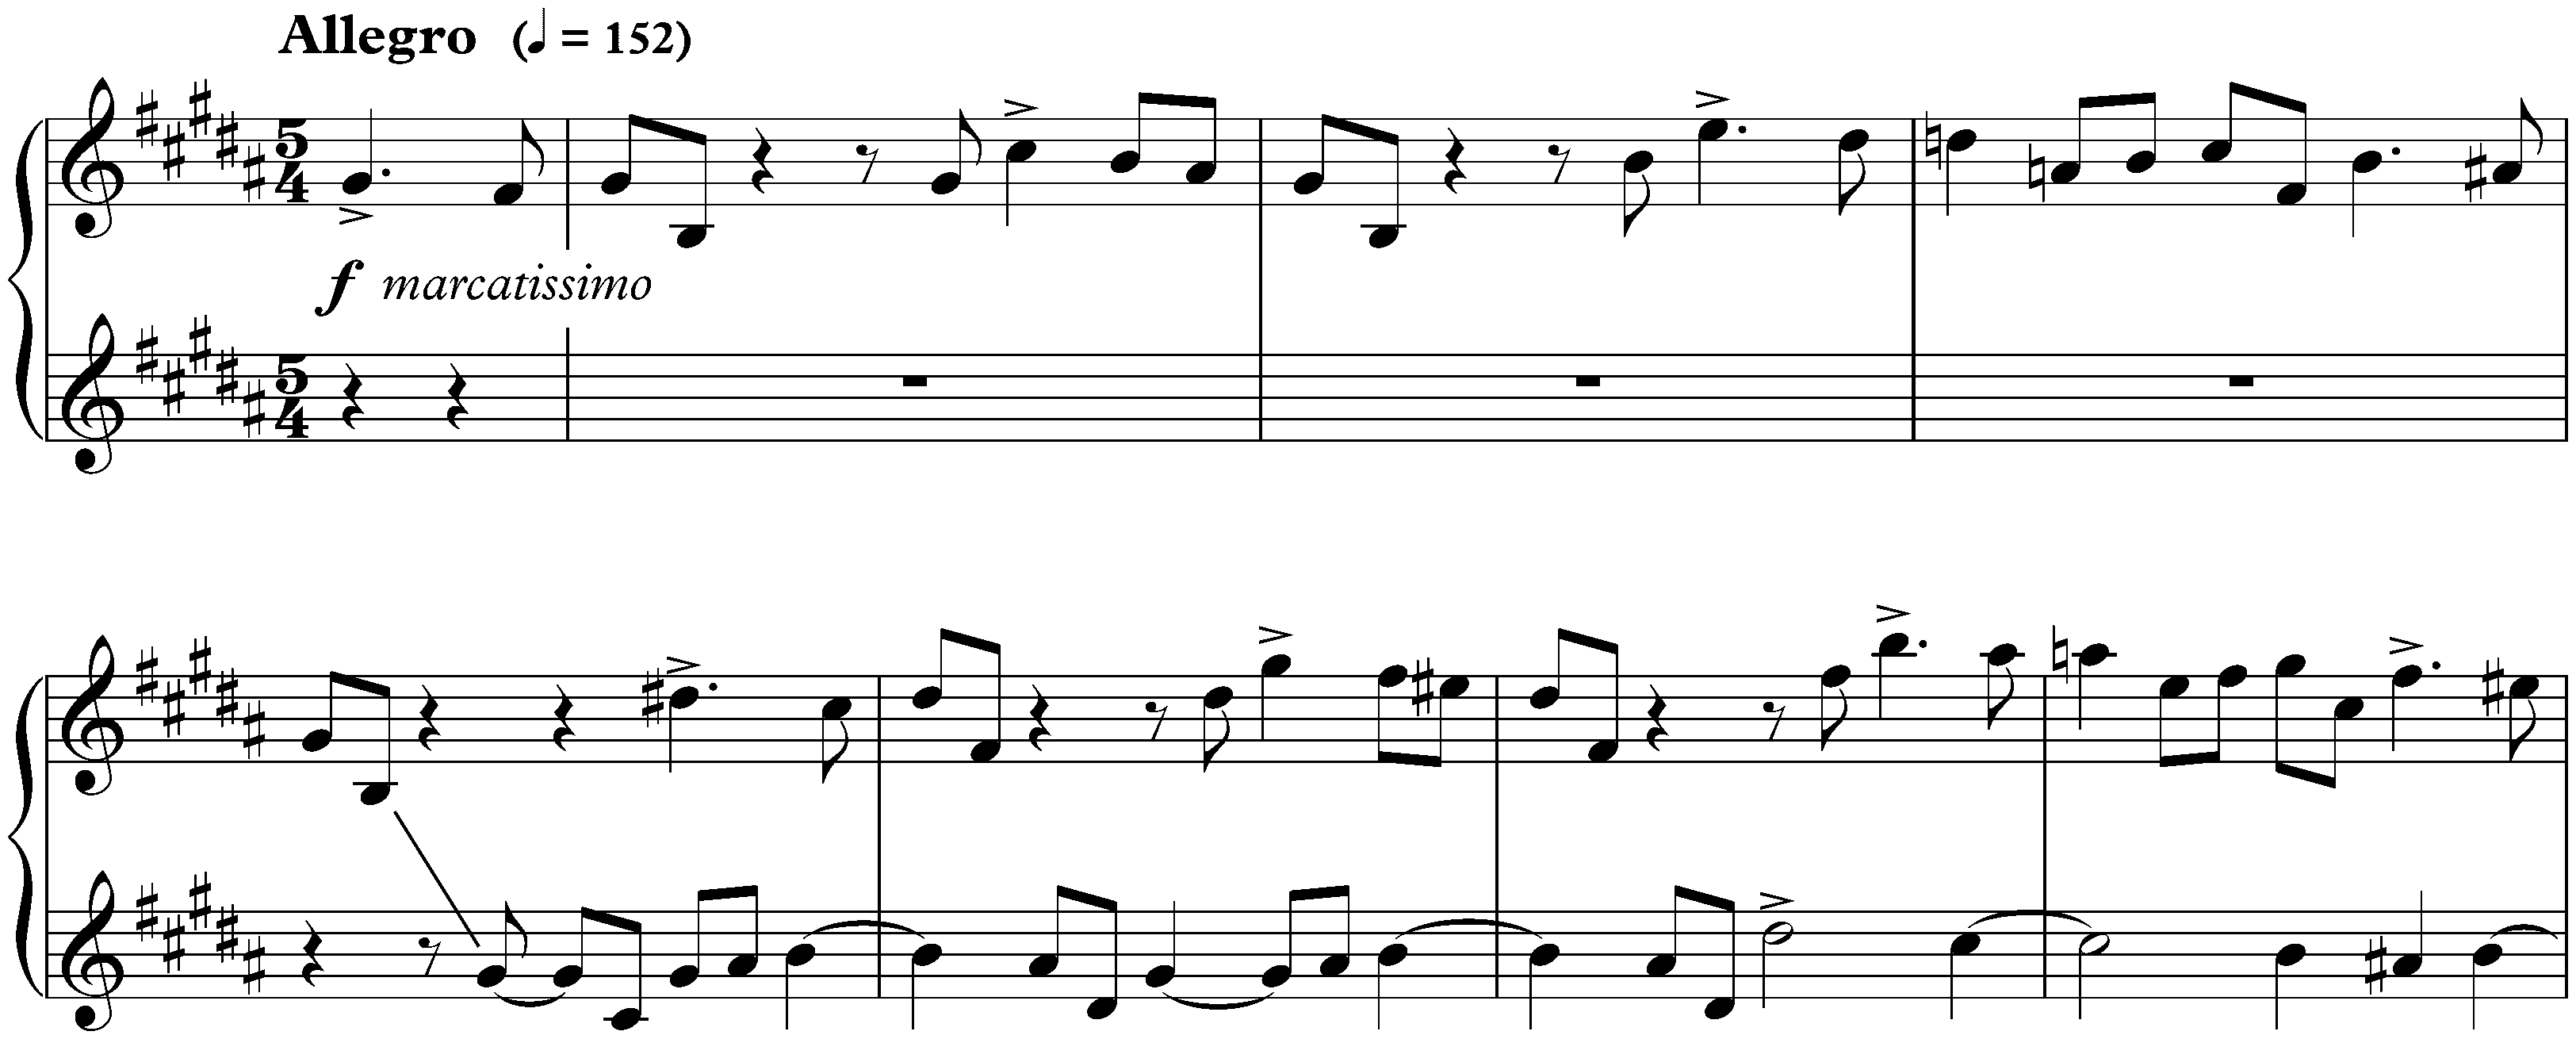 Twenty-four Preludes and Fugues, op. 87; 12. G-sharp minor, Fugue